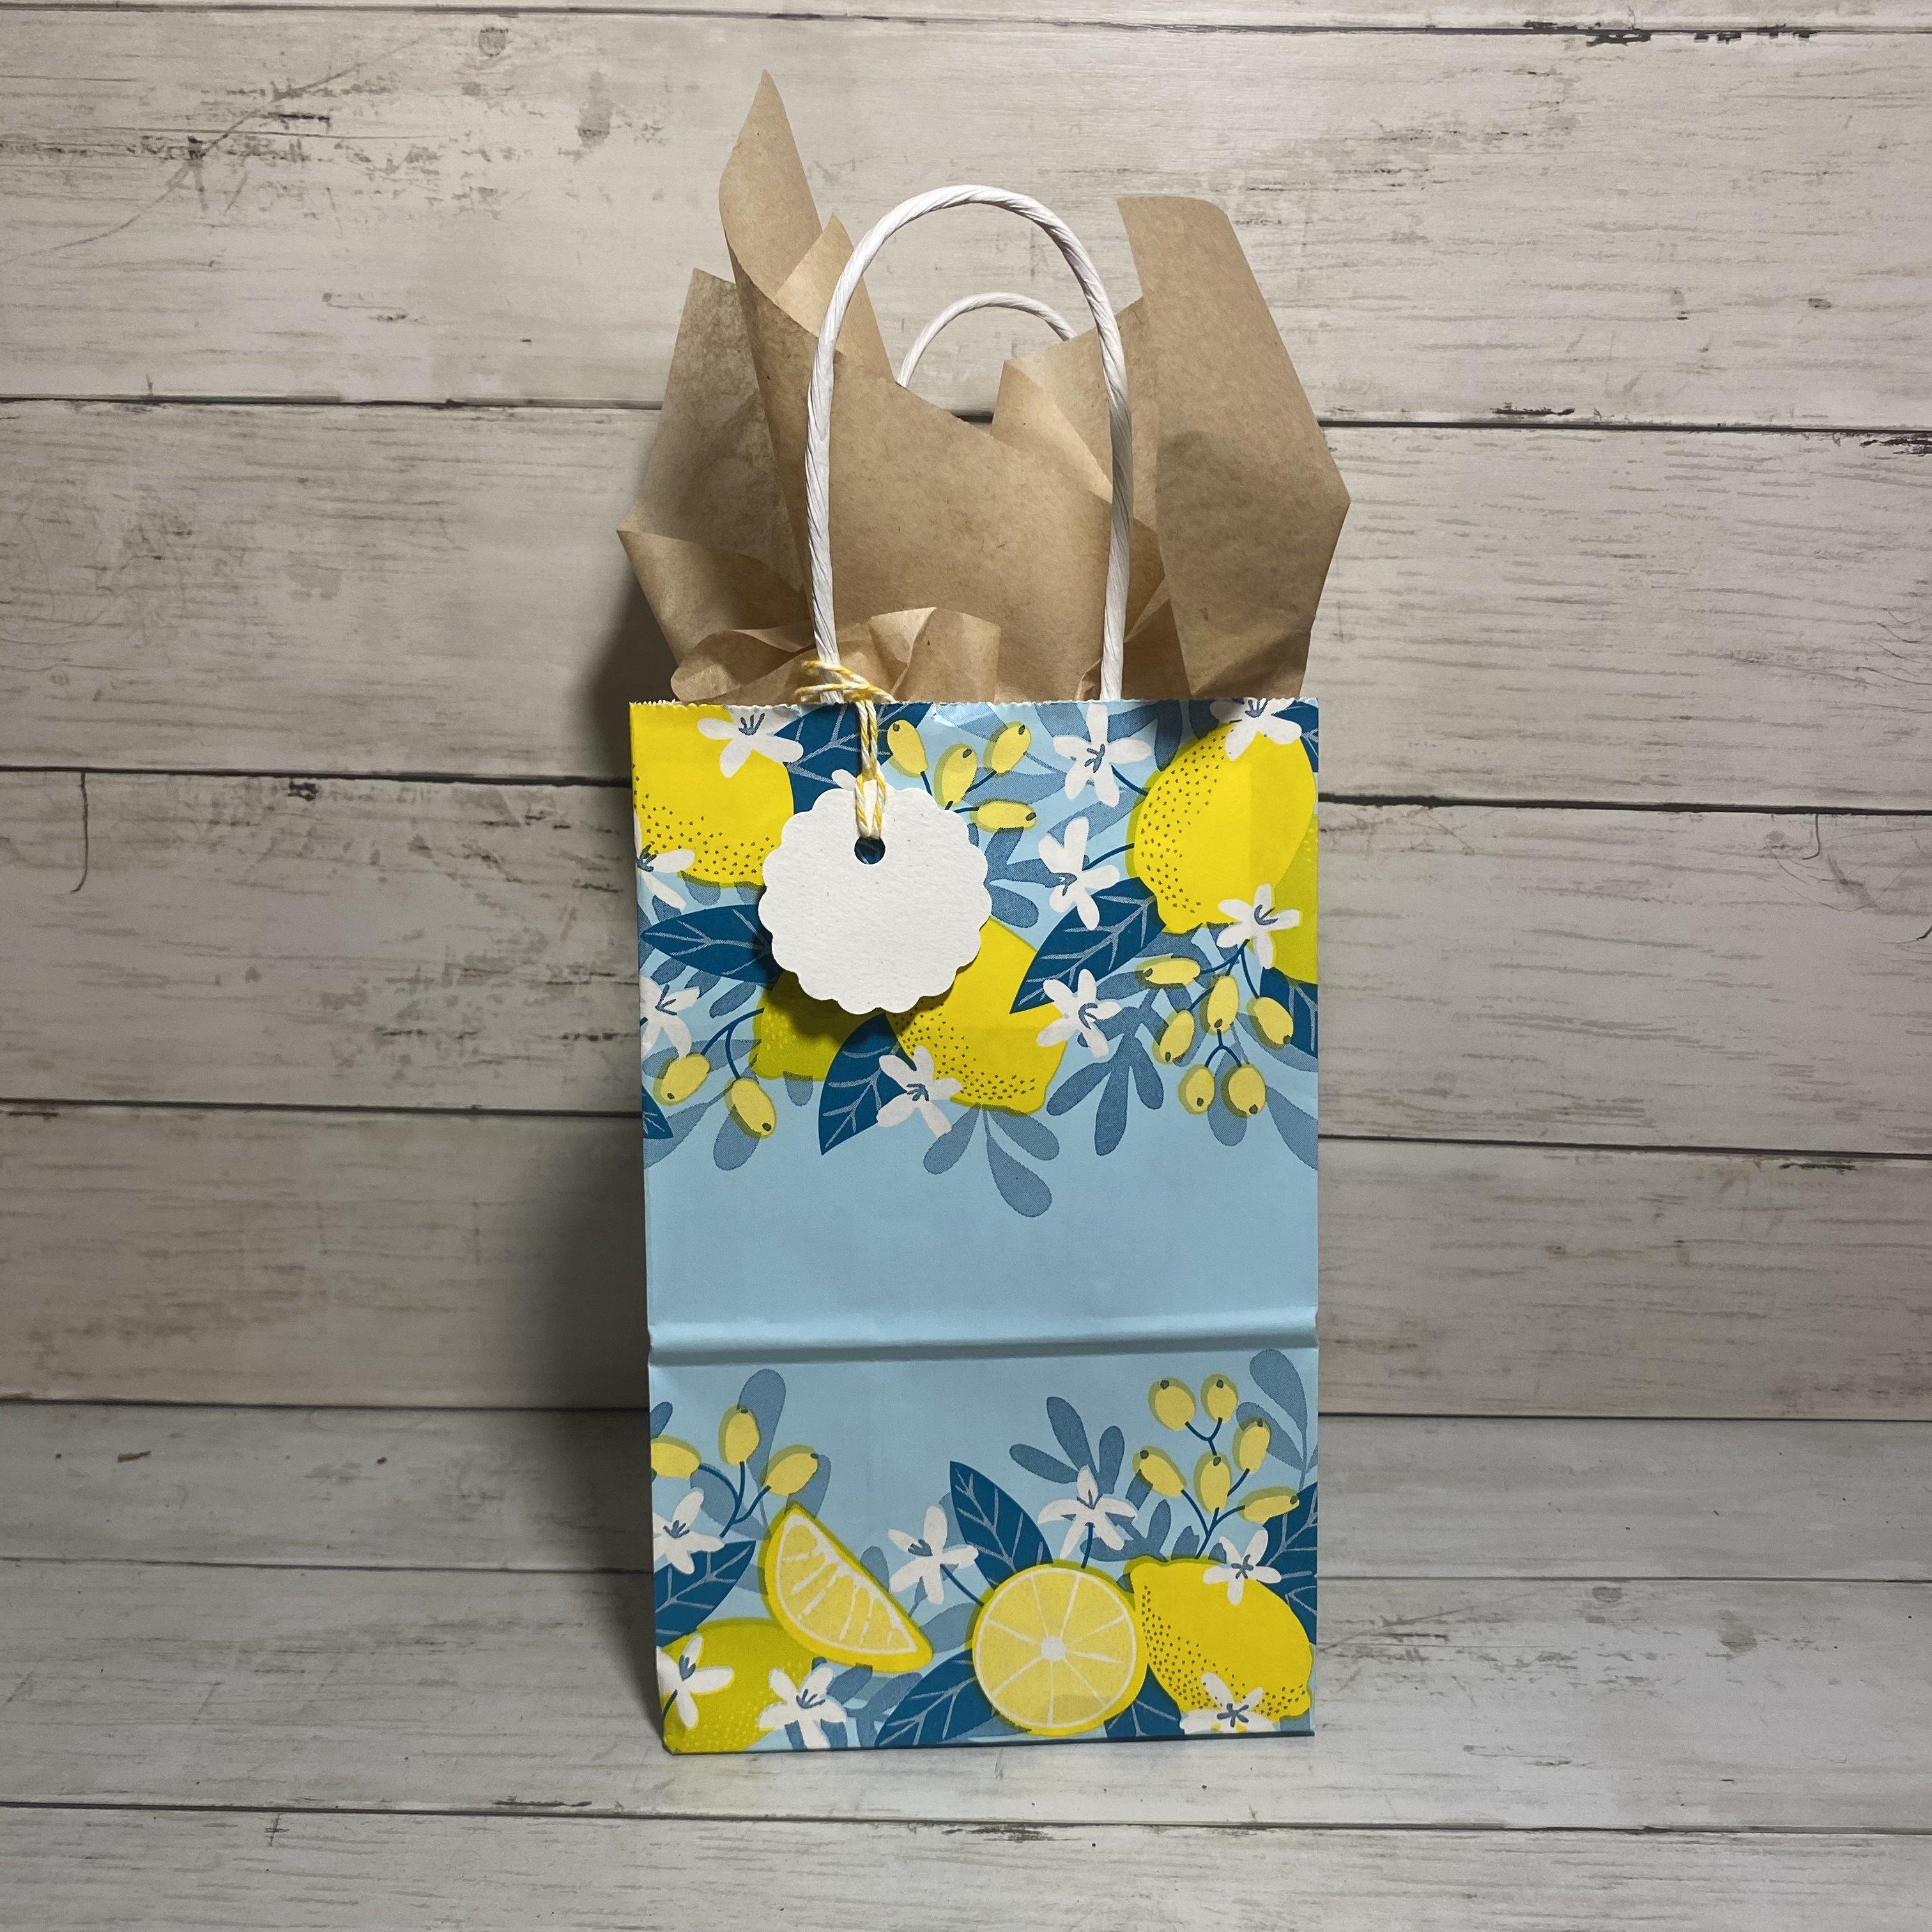  24pcs Lemon Party Bags,Summer Cool Paper Bags,Lemon Juice Gift  Bags,Yellow Lemon Party Favor Bags with 36pcs Lemon Stickers : Home &  Kitchen